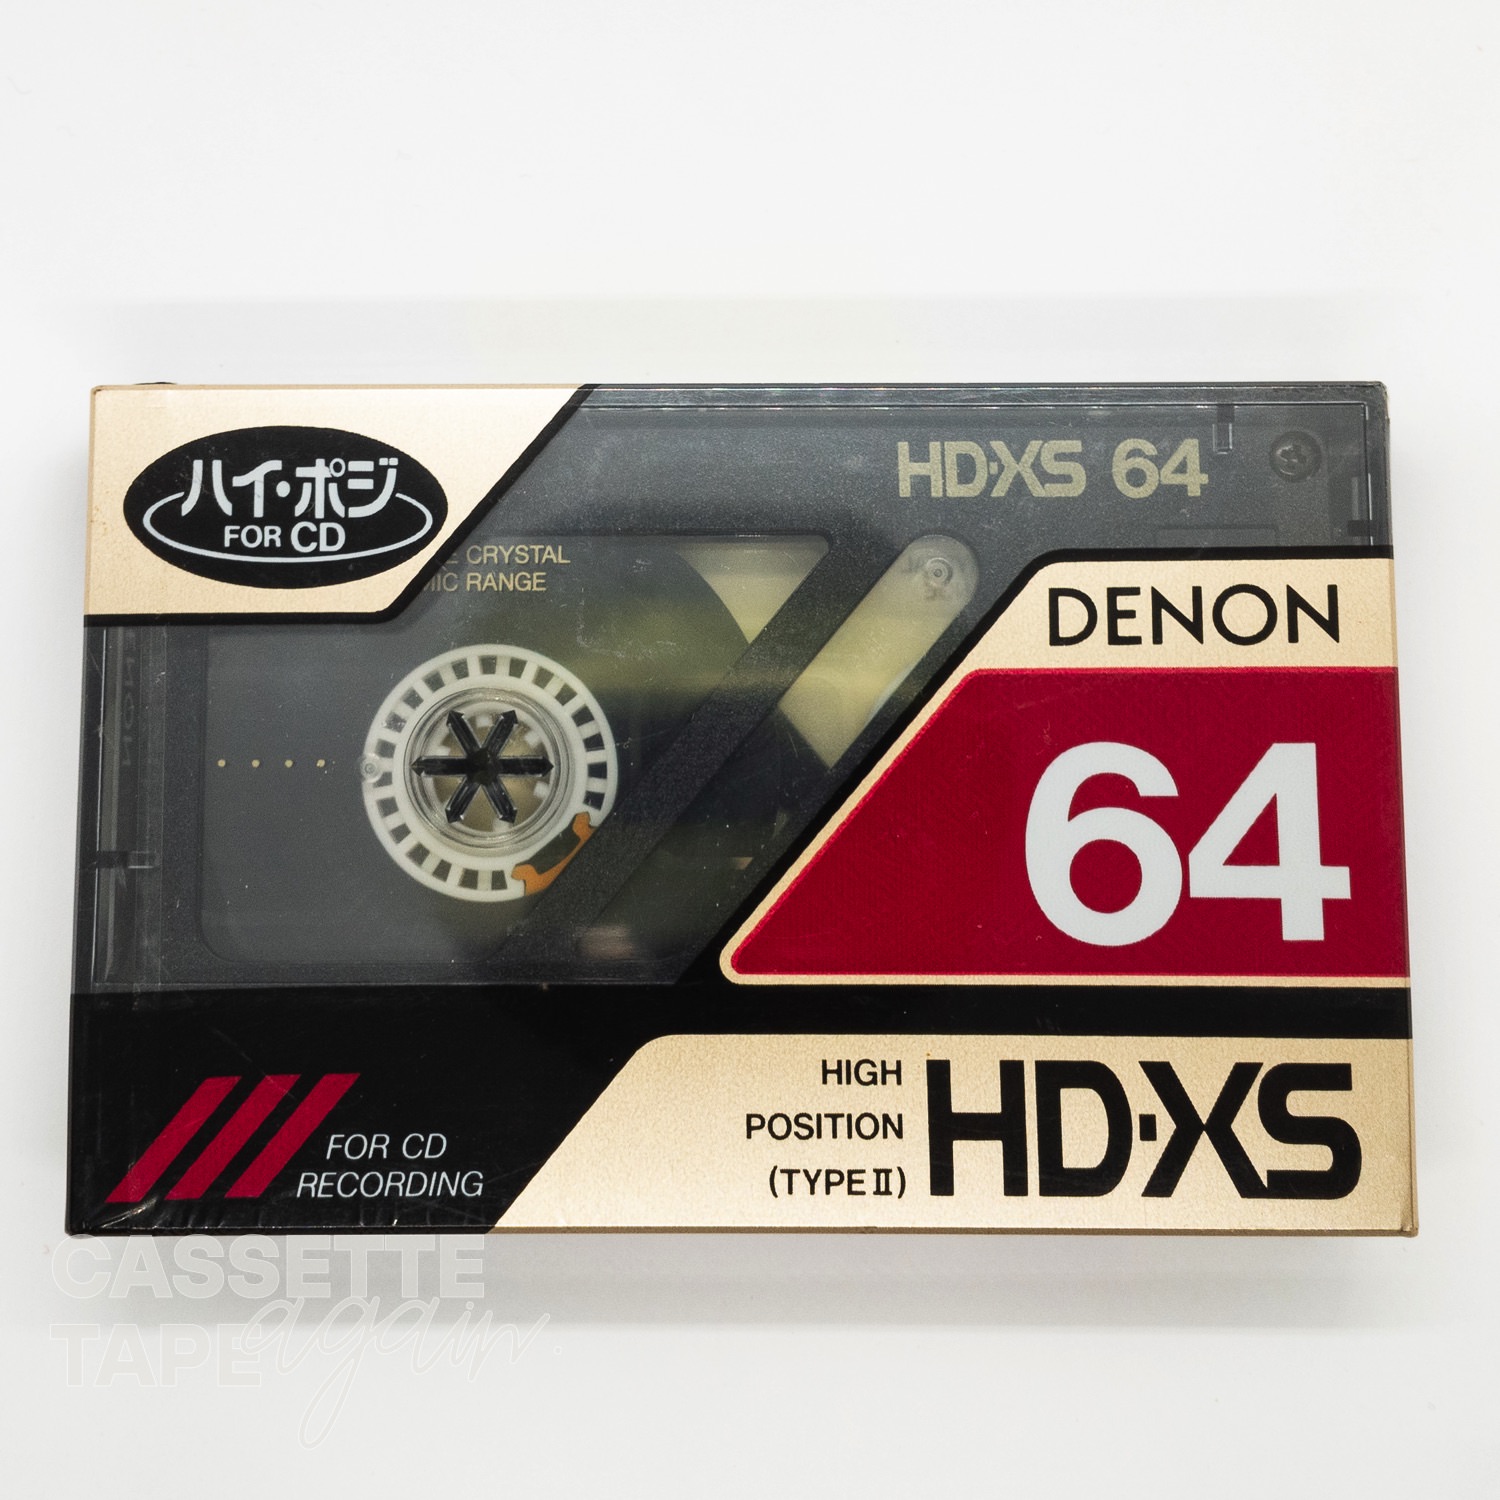 HD-XS 64 / DENON(ハイポジ)